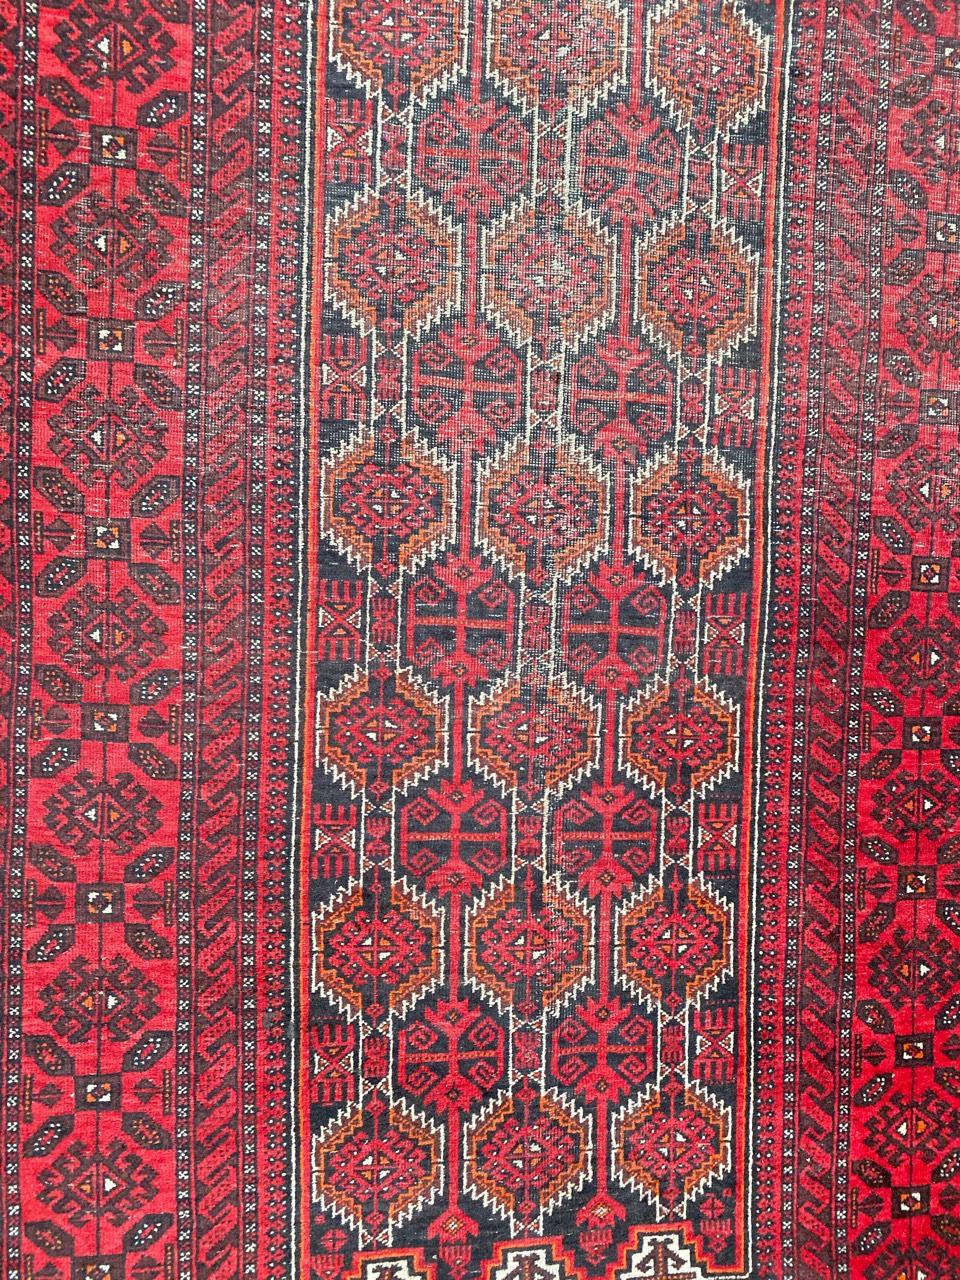 Magnifique tapis afghan vintage avec un design tribal géométrique et de belles couleurs avec du rouge, du violet et du noir, entièrement noué à la main avec du velours de laine sur une base de coton.

✨✨✨
